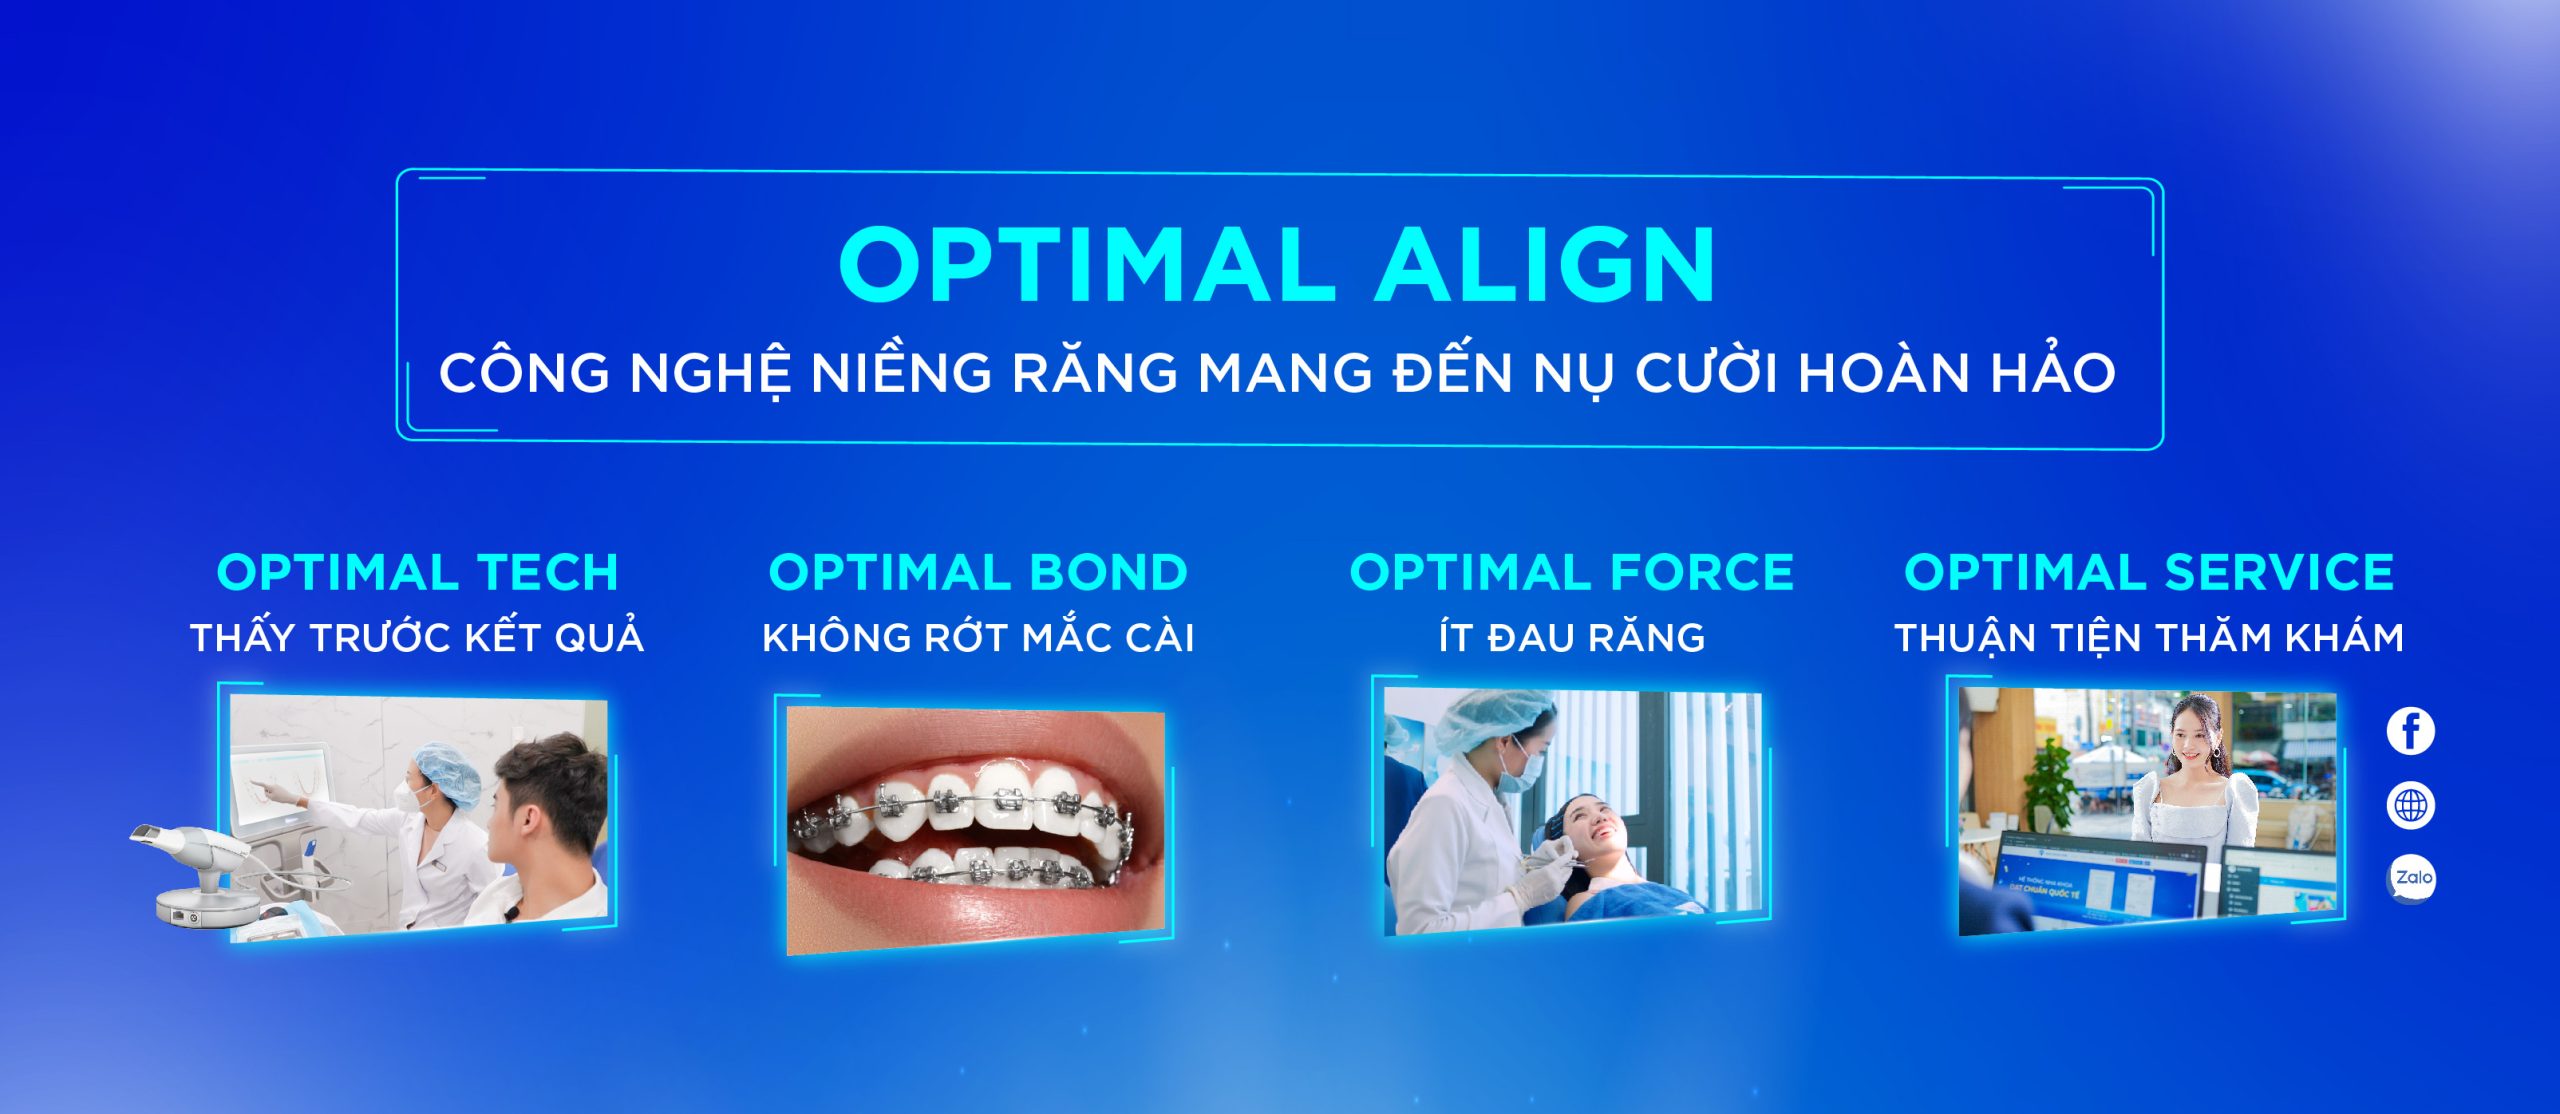 [Top Banner Mobile] Có nên niềng răng không? Tìm hiểu lợi ích, tác hại khi niềng răng